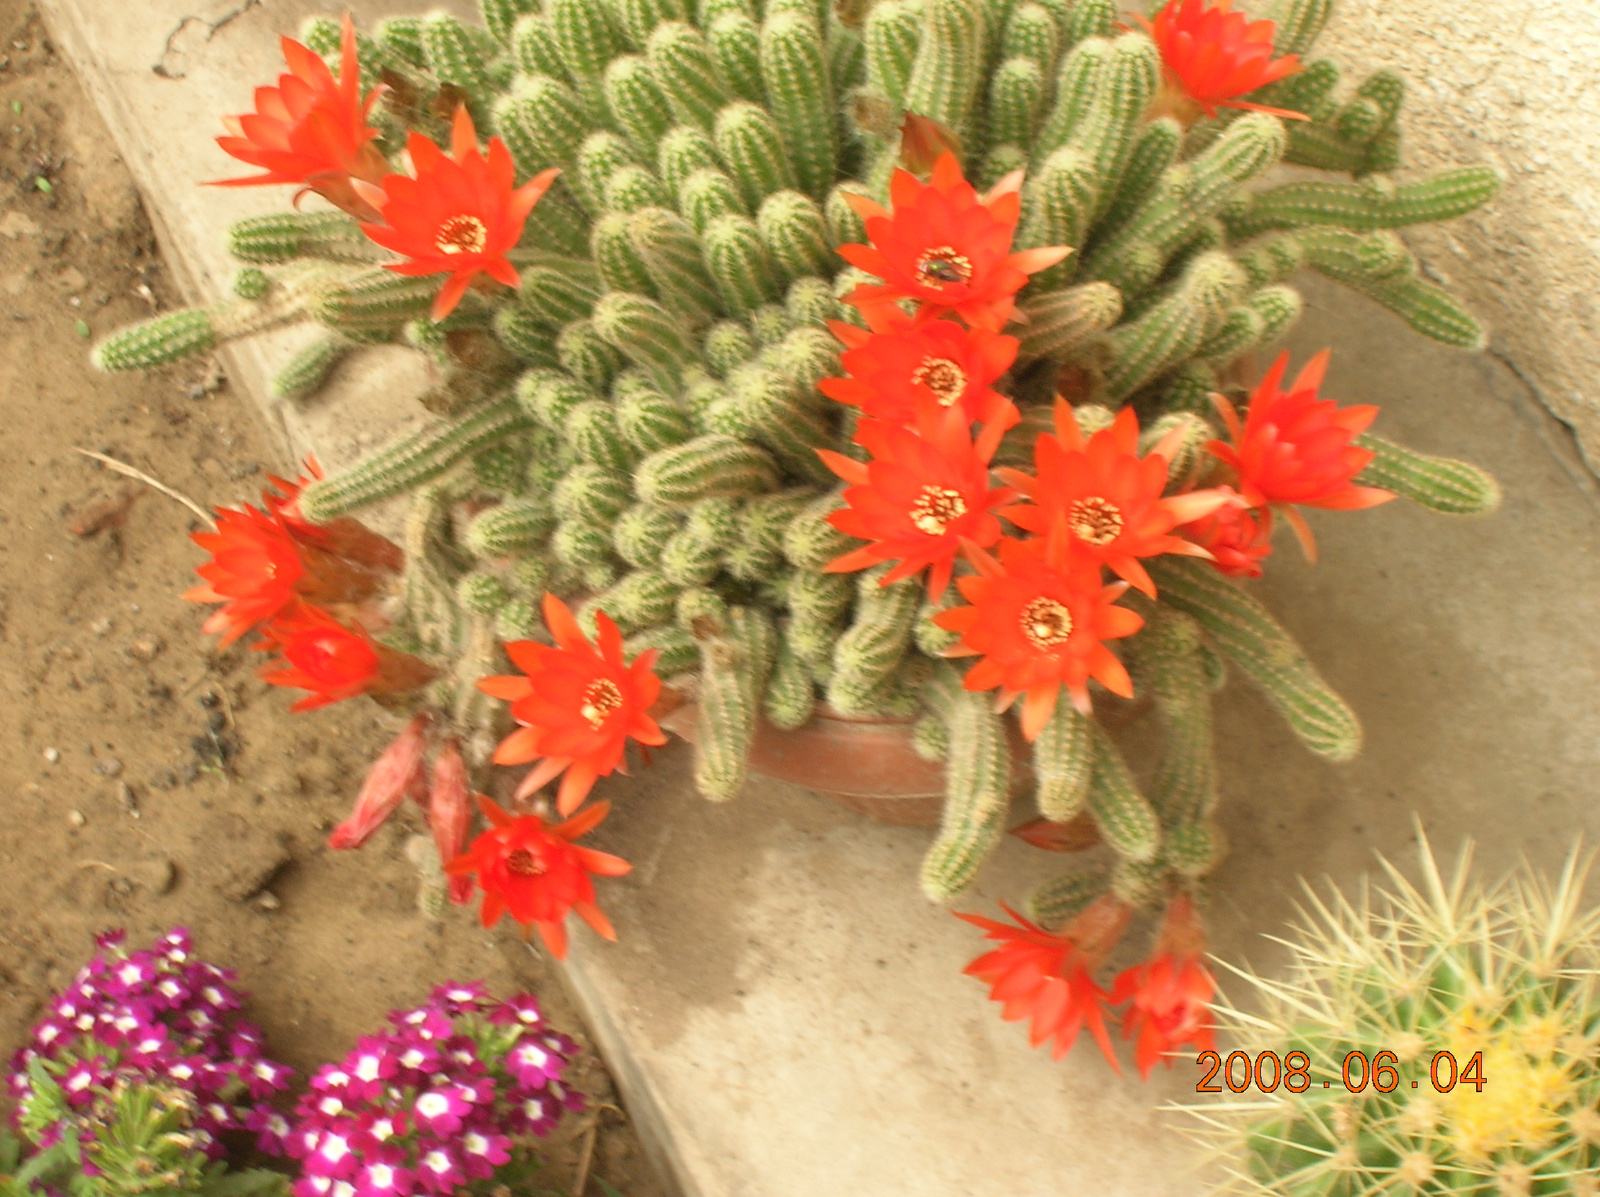 virágaim 2008 kaktusz